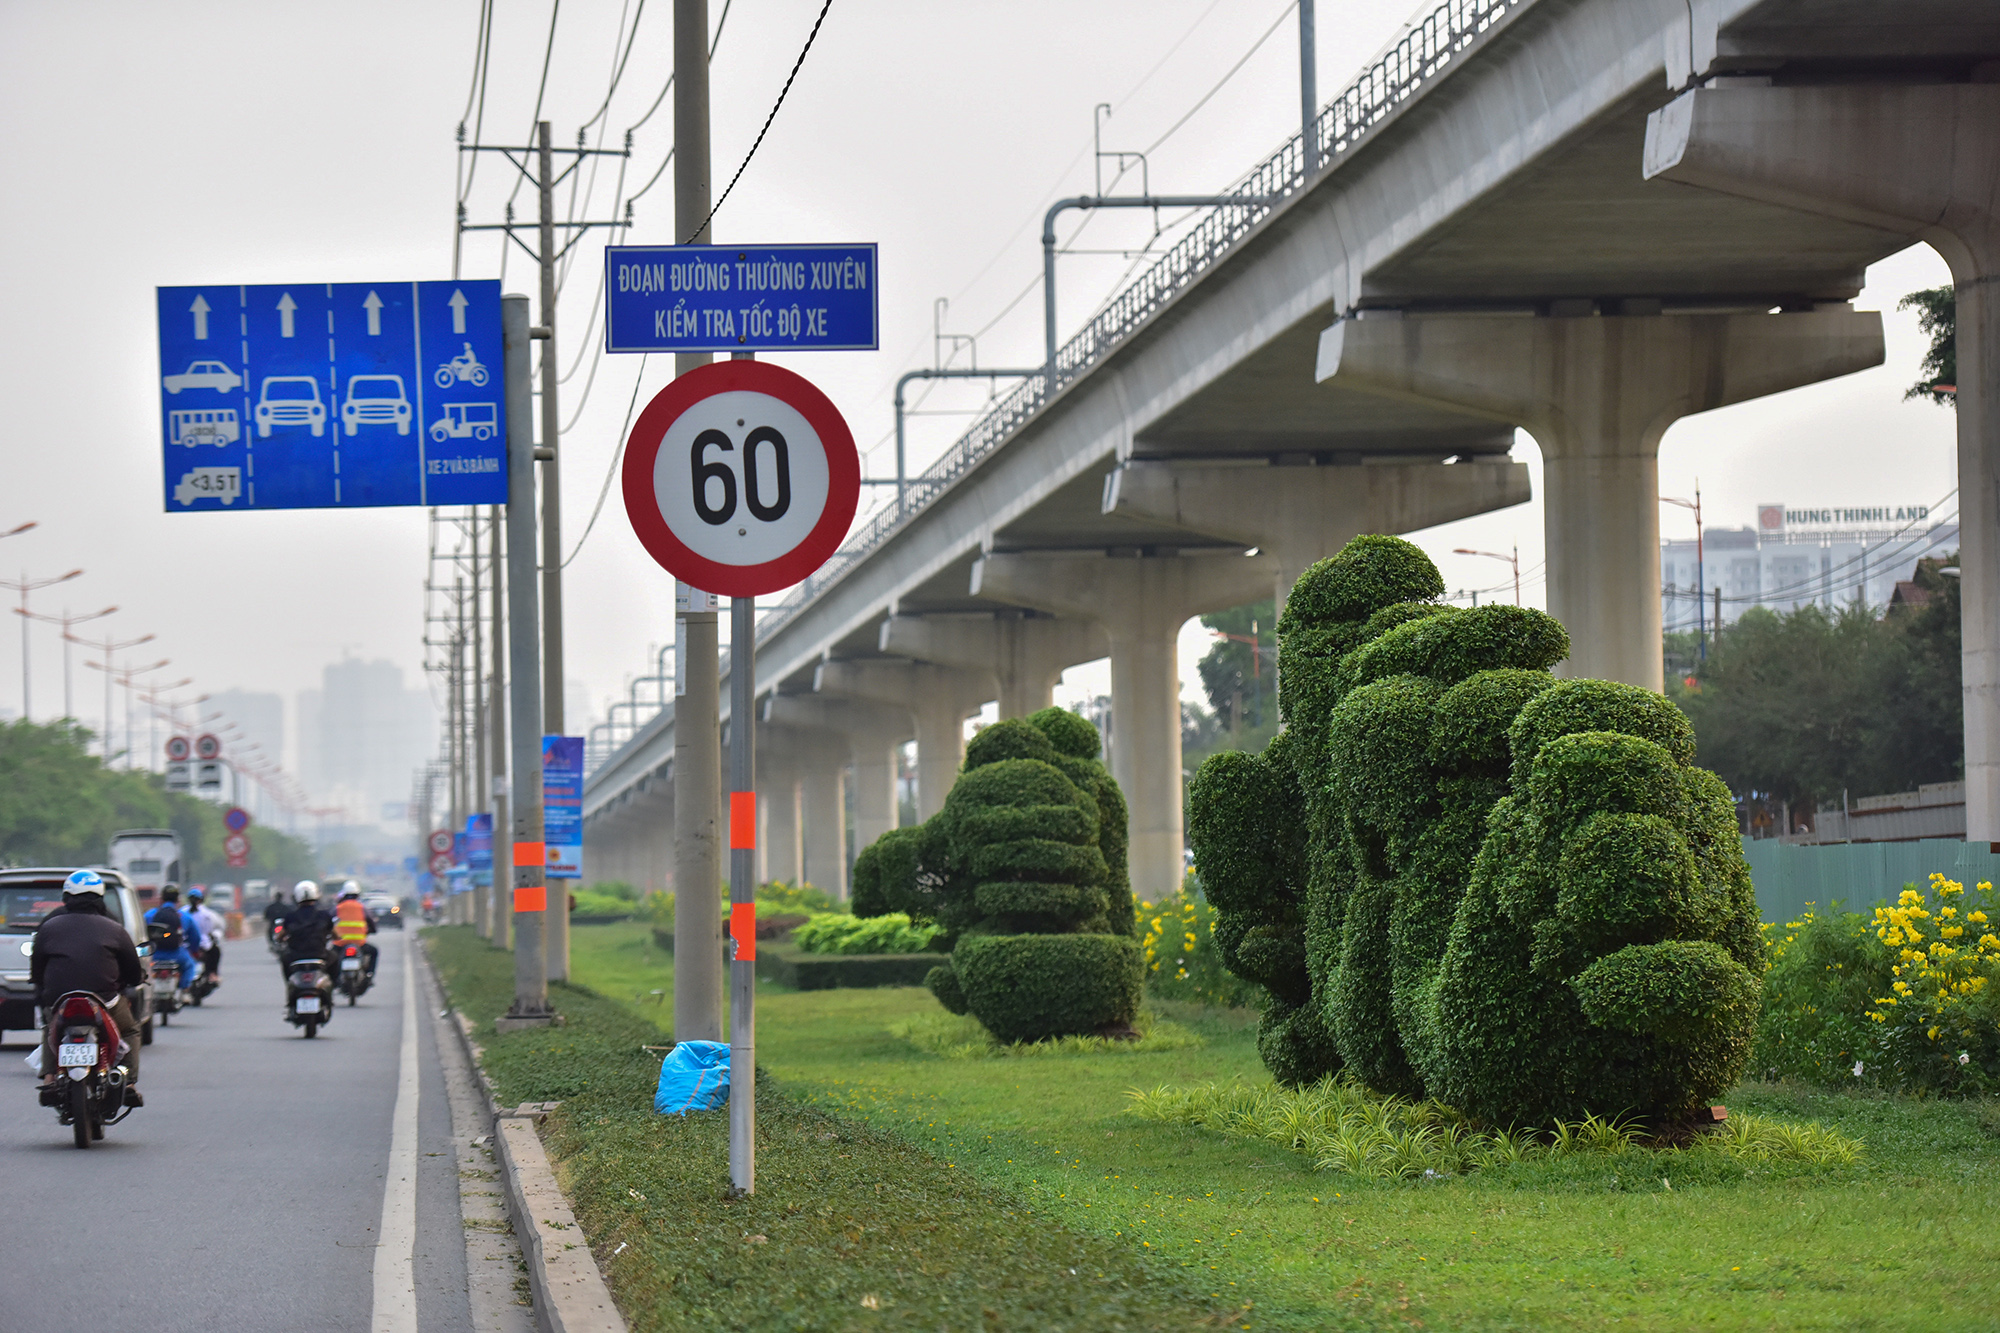 Toàn cảnh tuyến đường ở TP.HCM được đề xuất đổi tên thành đường Võ Nguyên Giáp - 15